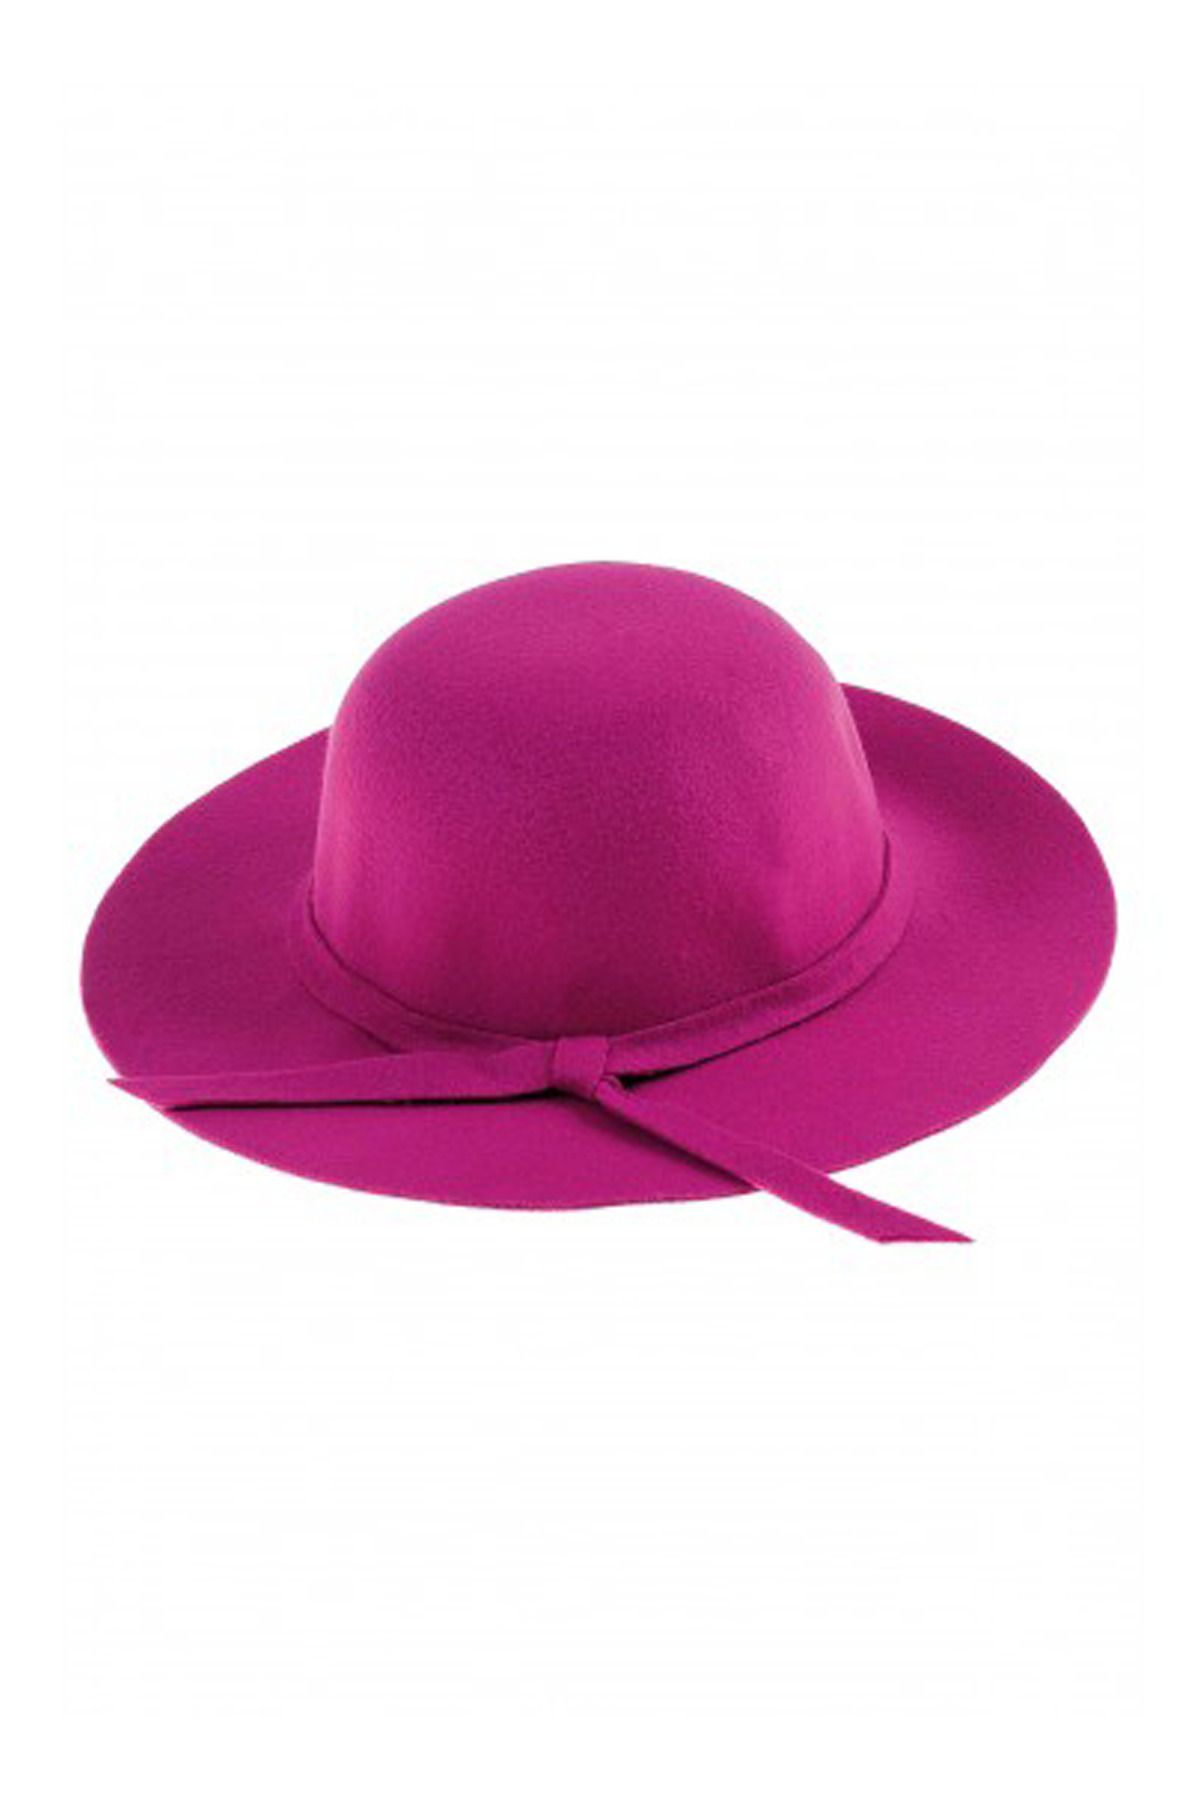 Bay Şapkacı Kız Çocuk Geniş Kenarlı Kaşe Şapka Mor 7168